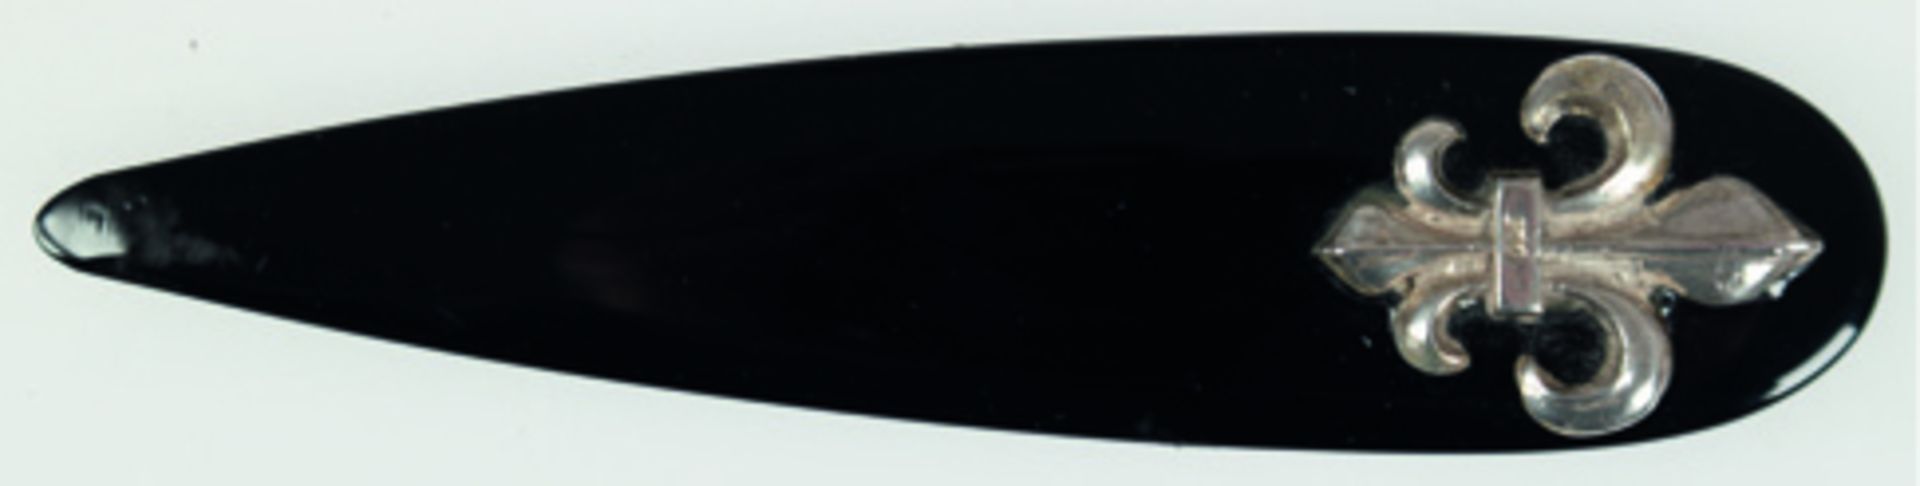 Brieföffner um ca. 1880/90, schwarzer Onyx, französische Lilie aus 800er Silber, Länge ca. 12.5 cm,